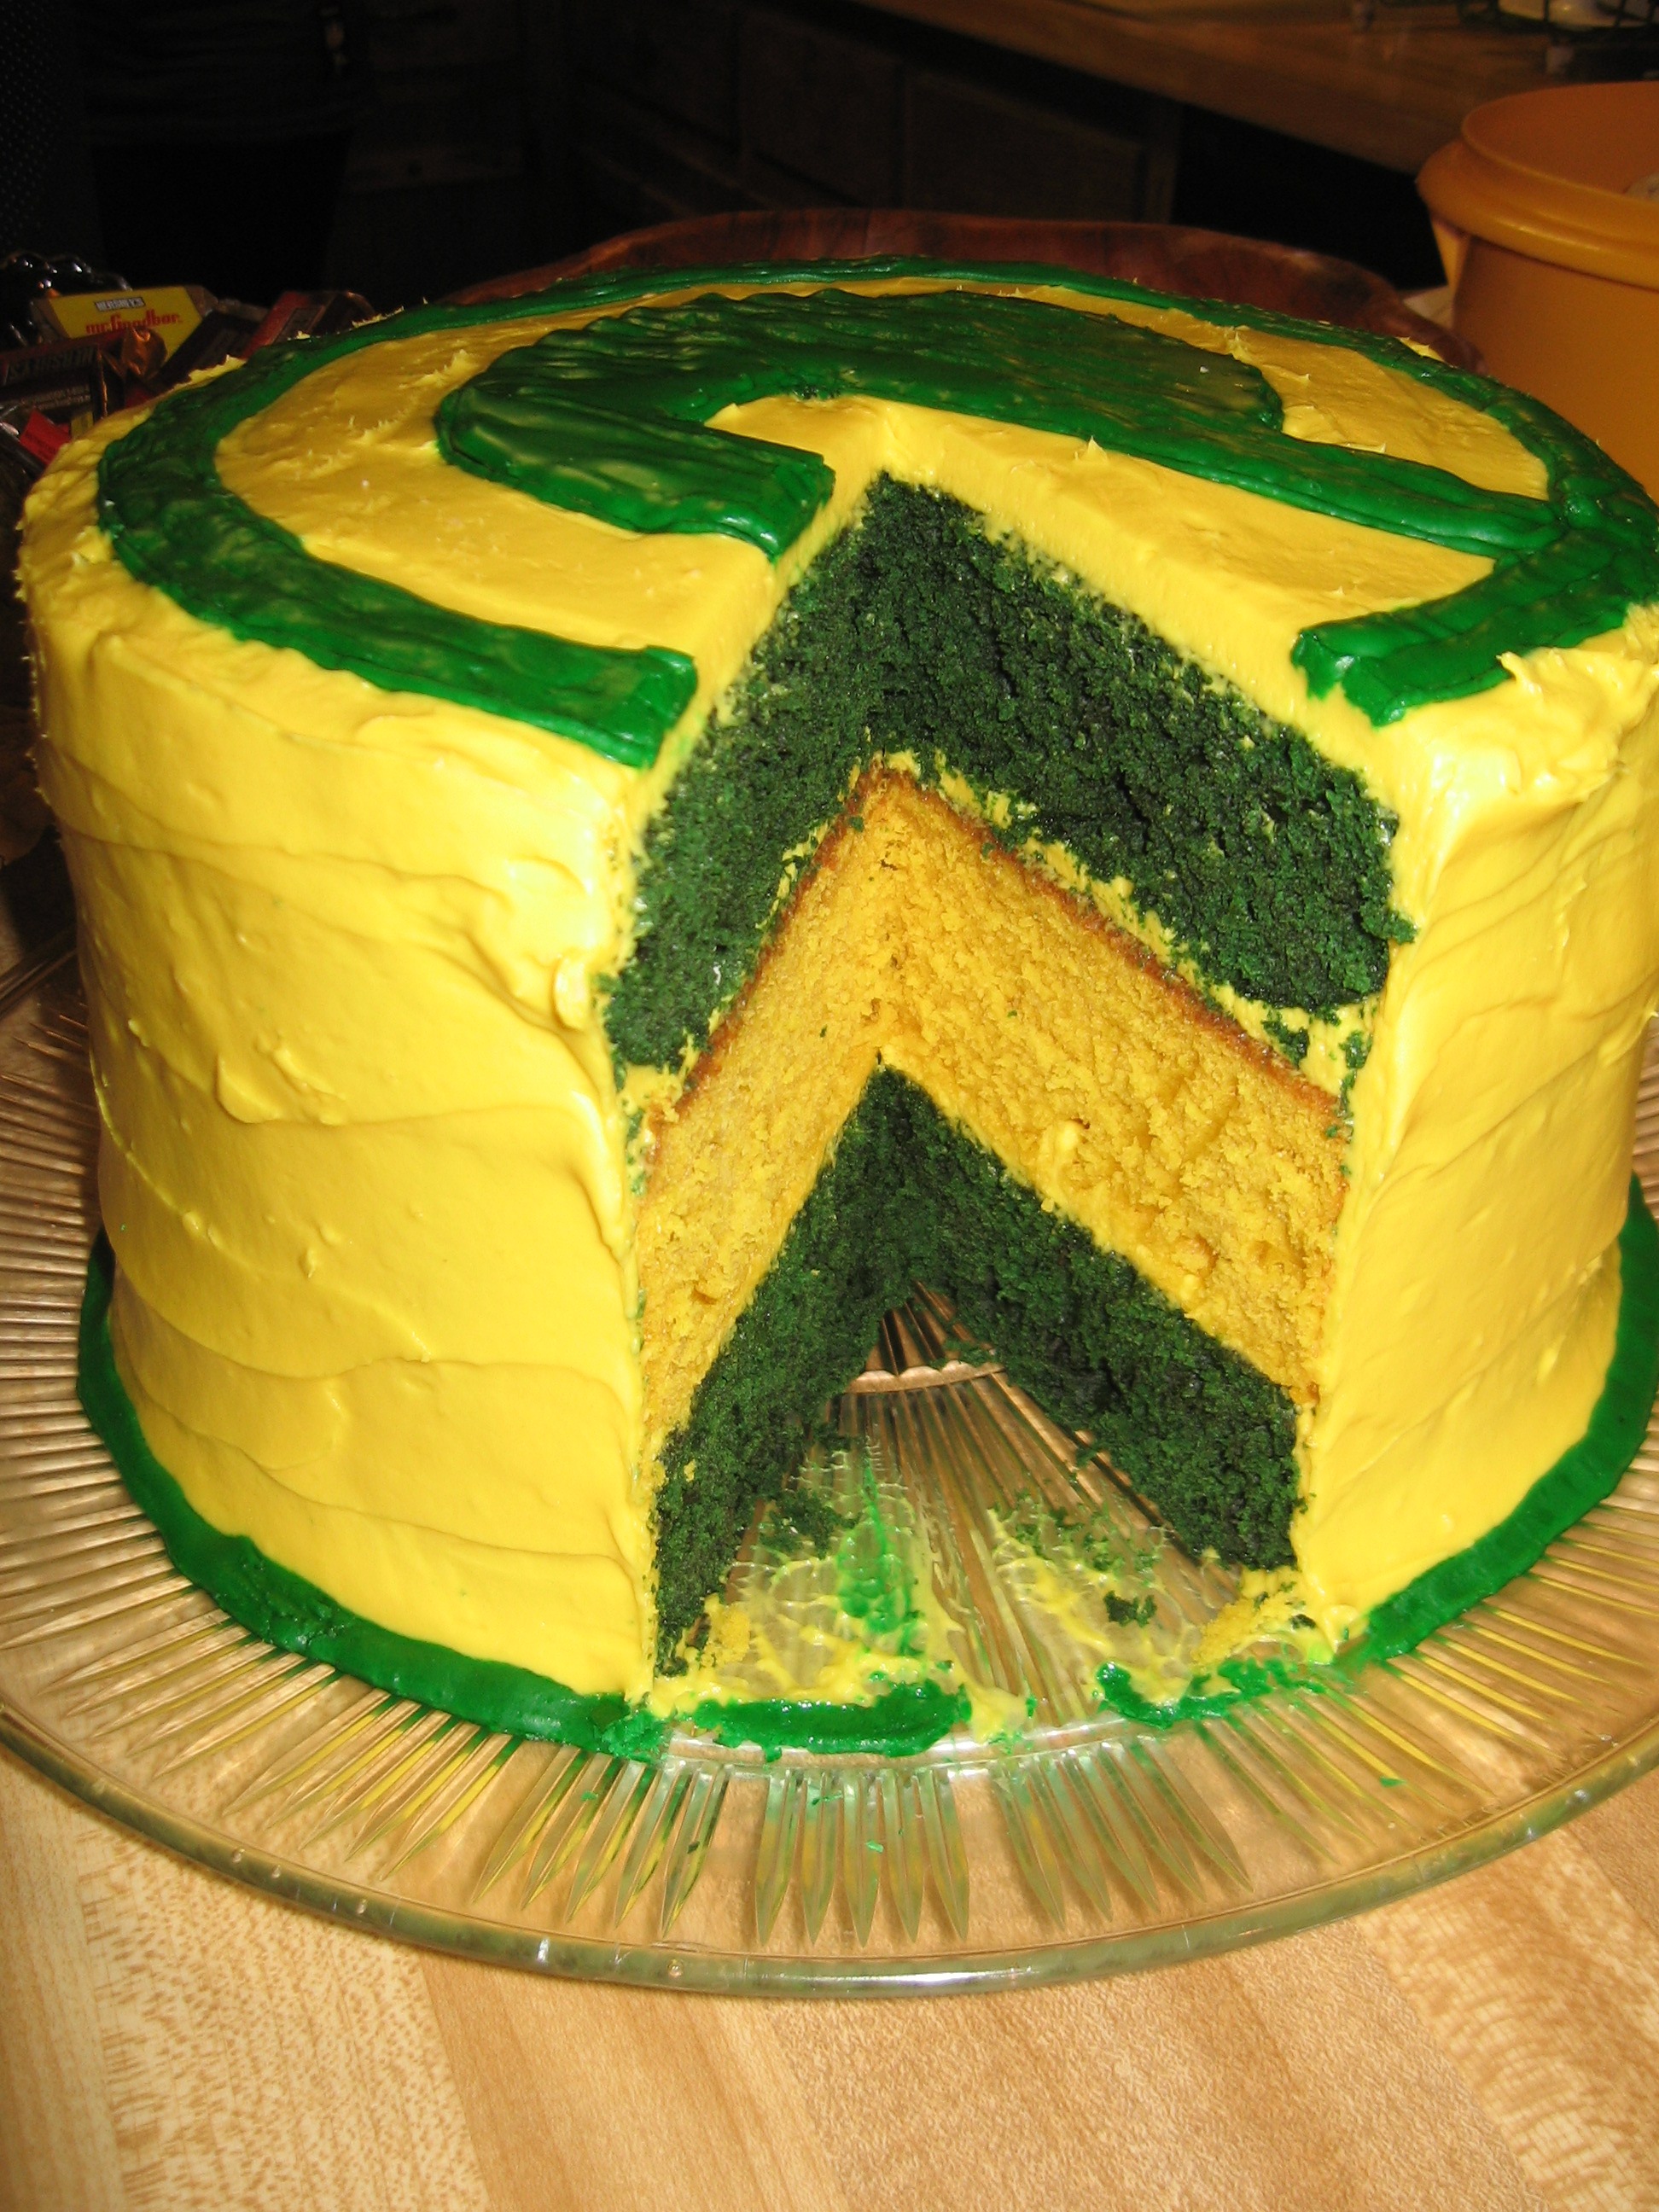 Green Bay Packers Birthday Cake